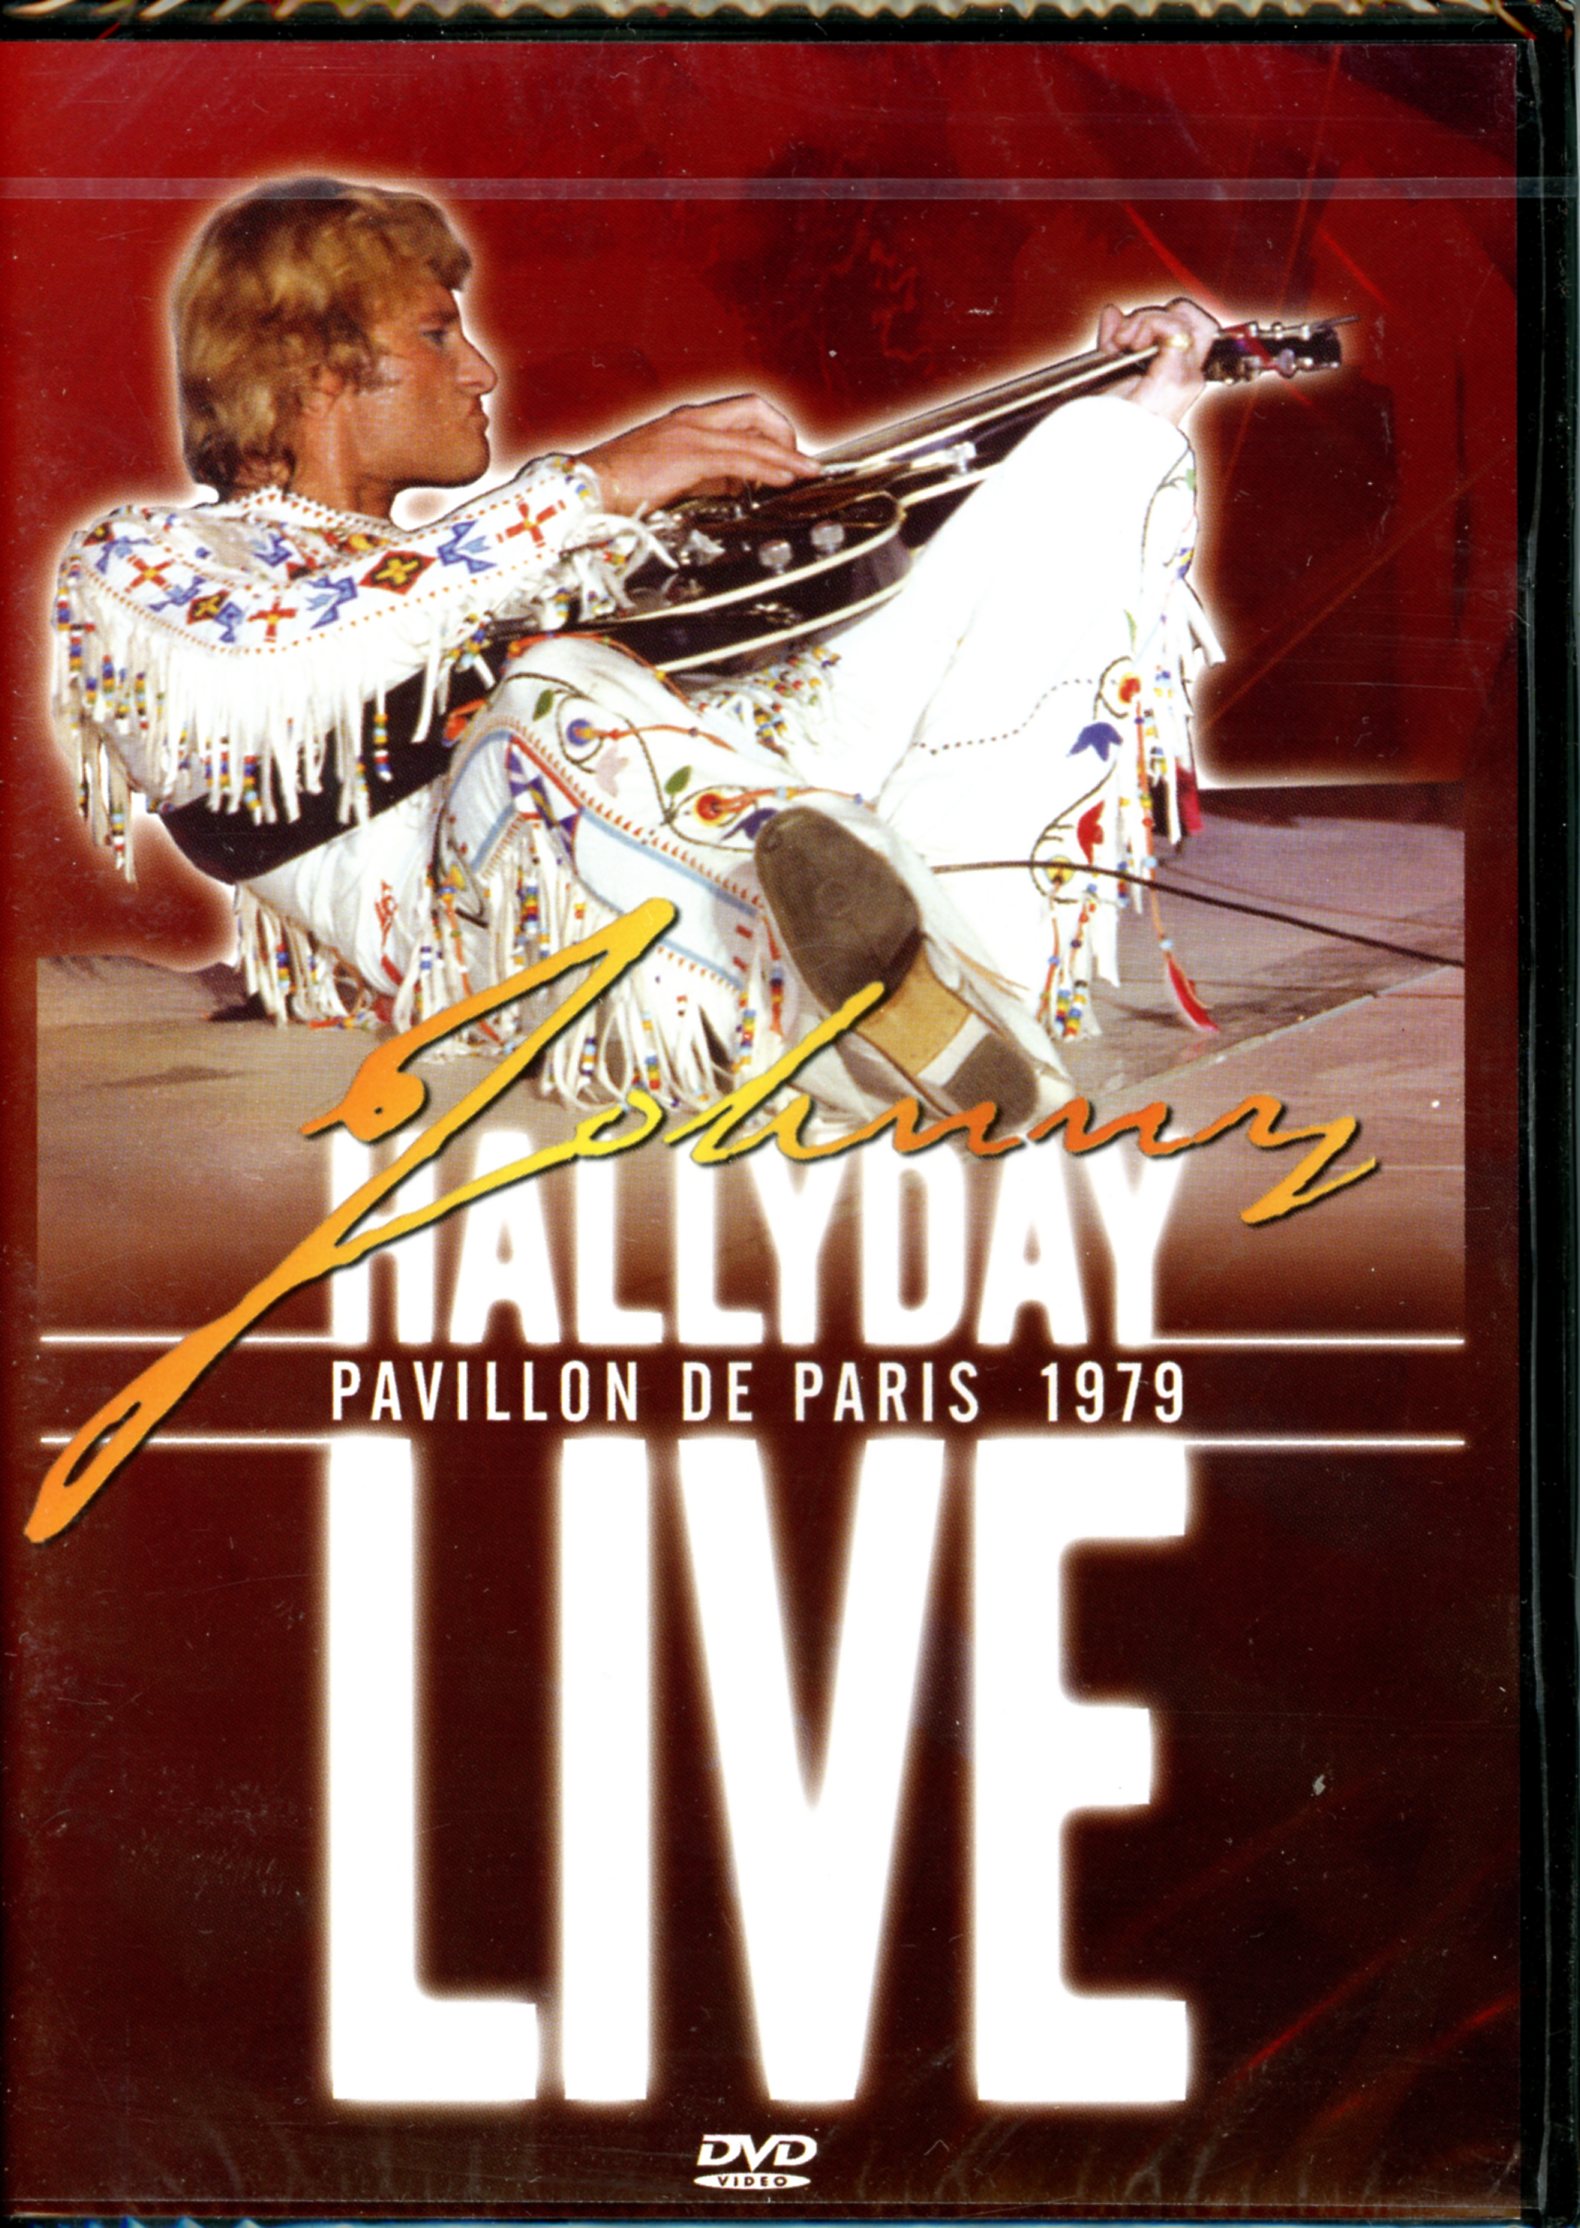 JOHNNY HALLYDAY AU PAVILLON DE PARIS 1979 - DVD